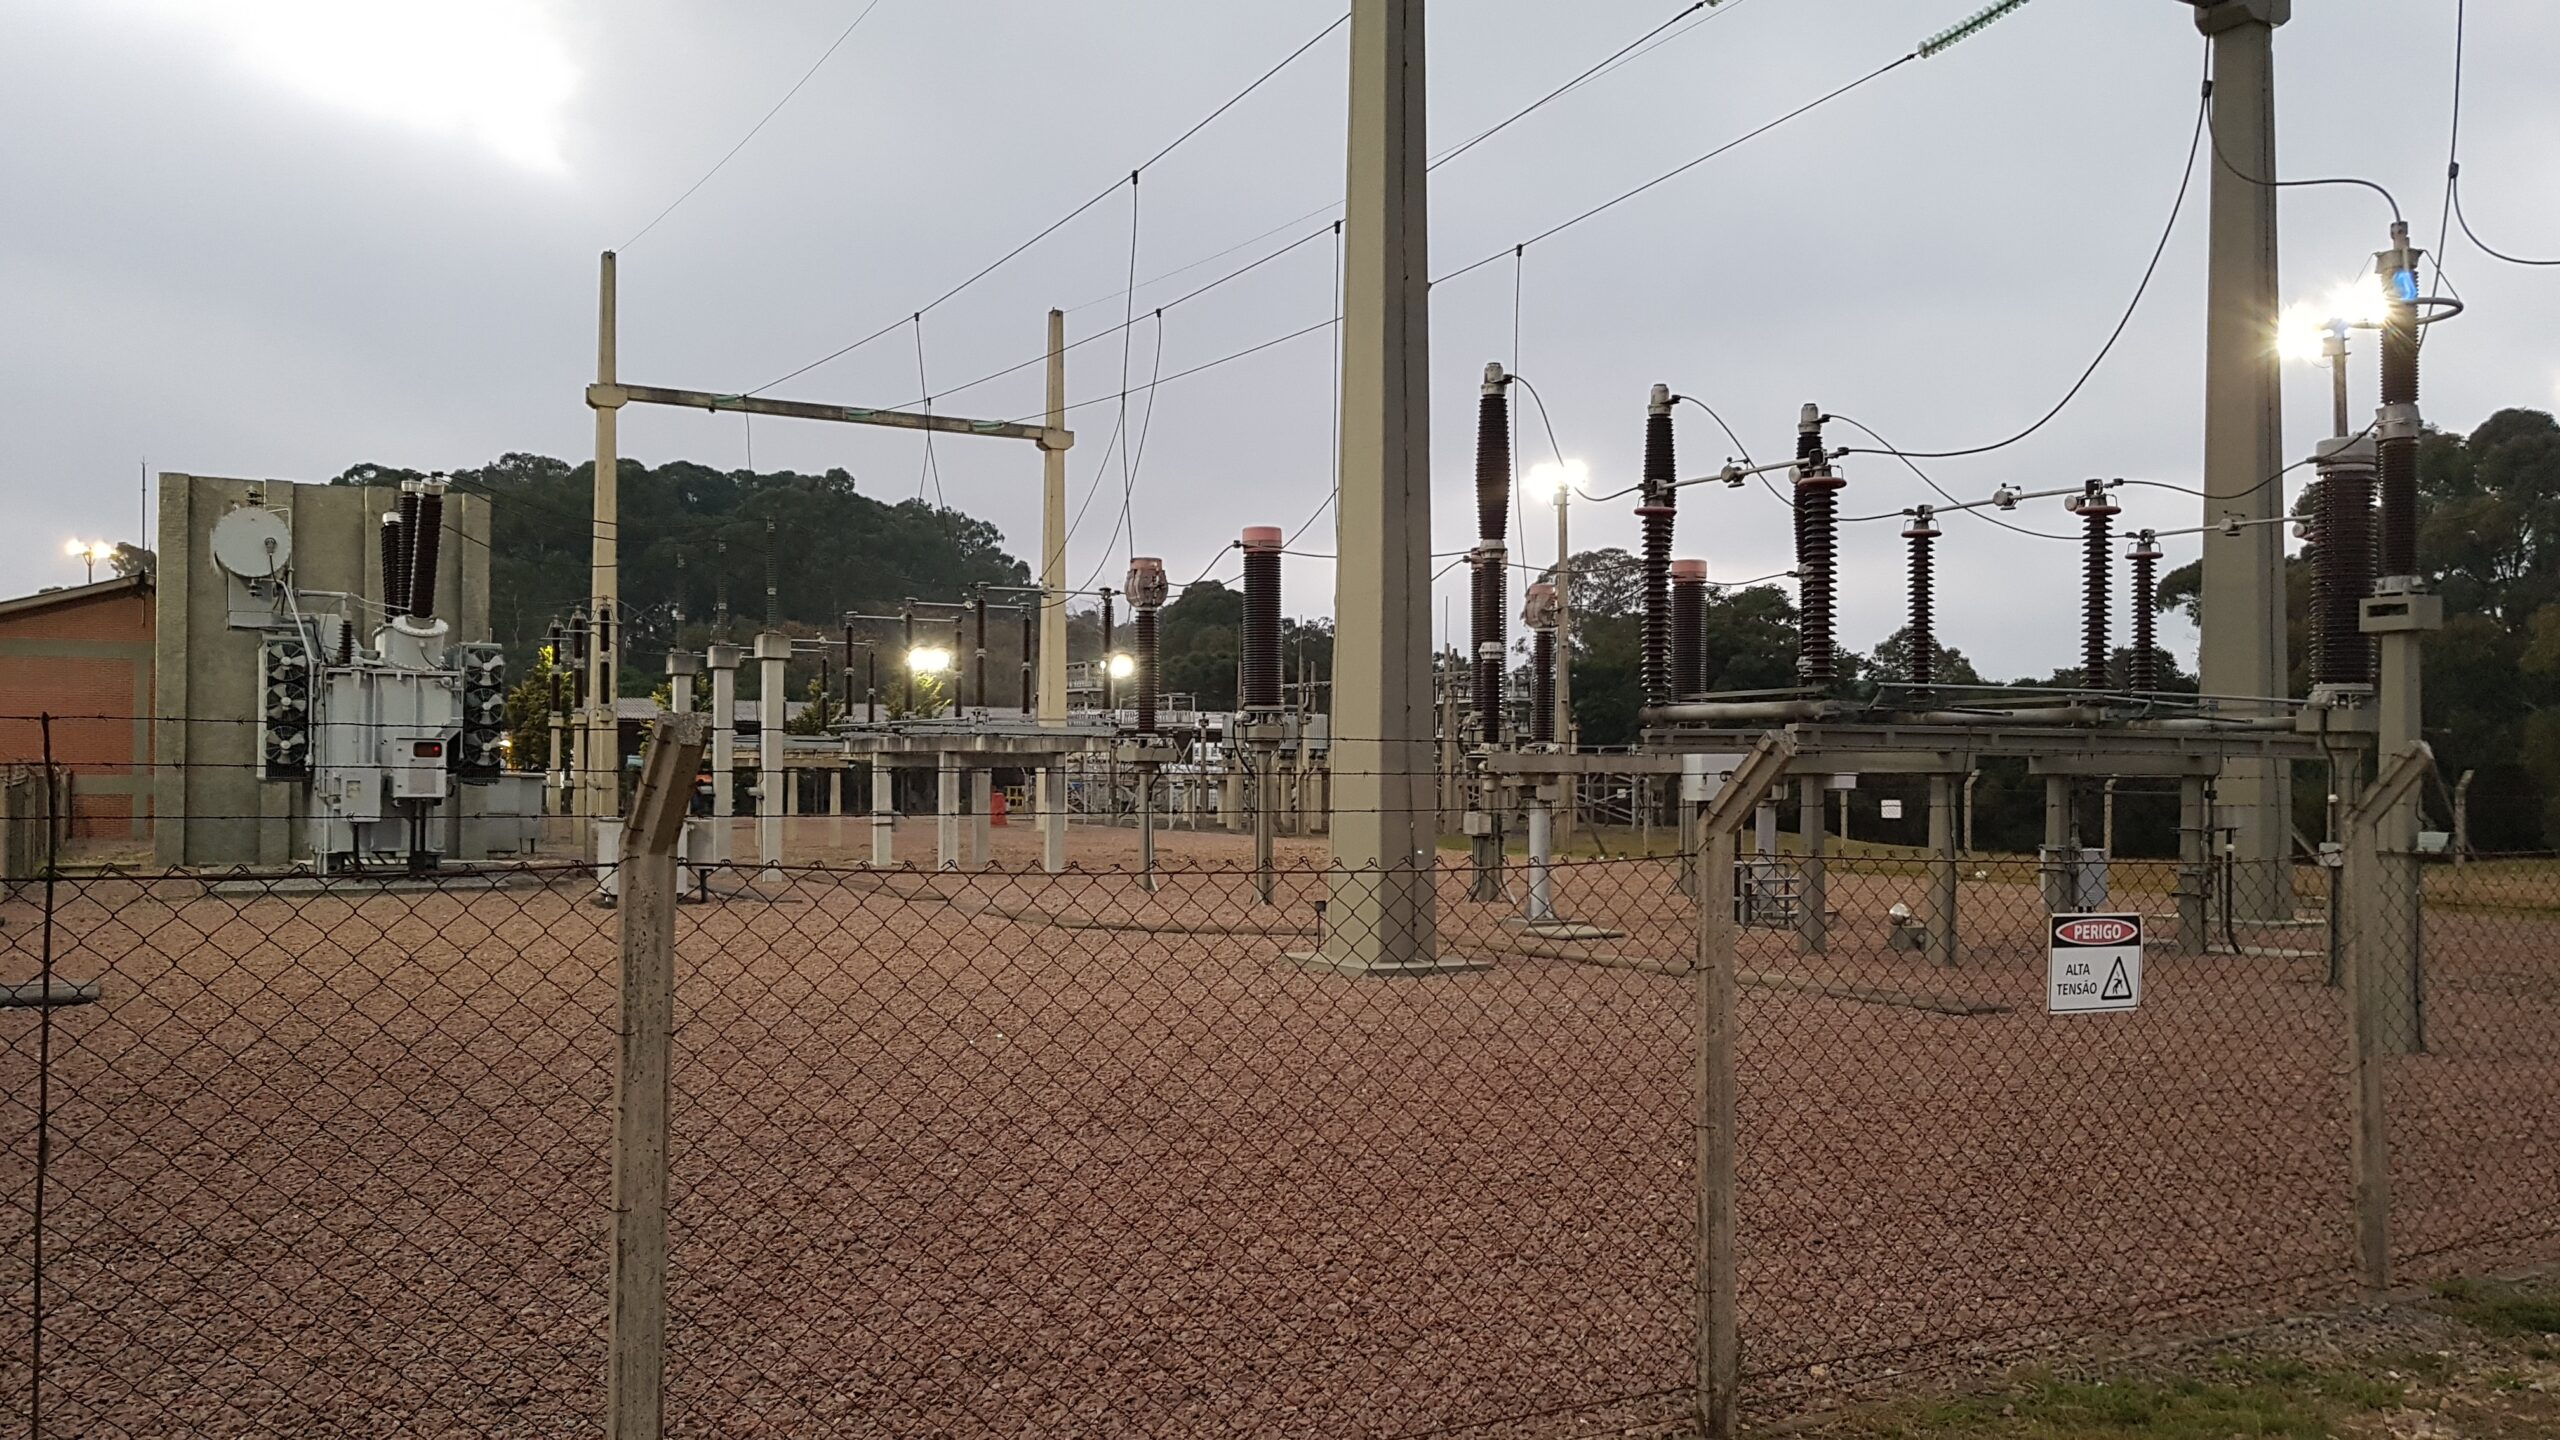 Isolamento social provoca queda do consumo de energia elétrica no Paraná em 18%